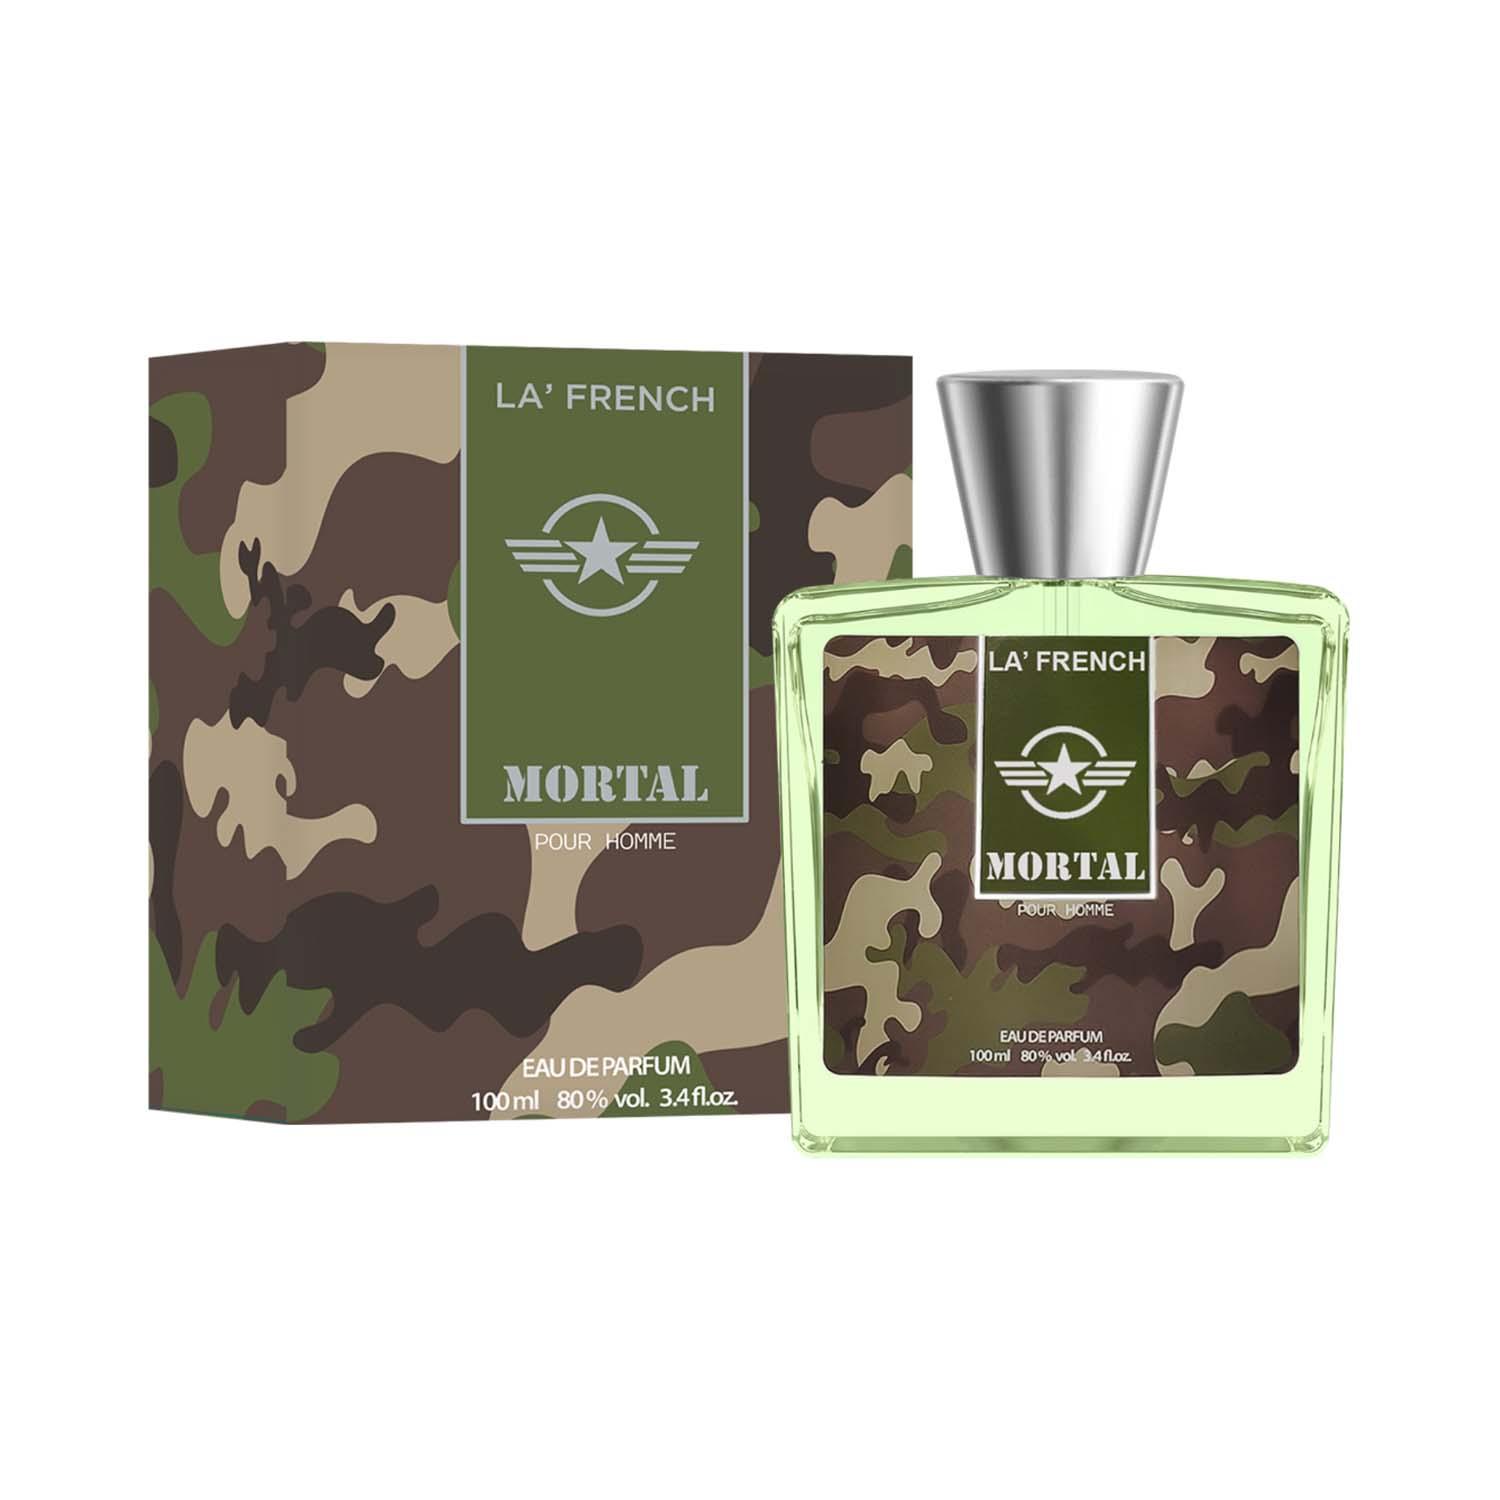 LA' French | LA' French Mortal Eau De Parfum For Men (100ml)